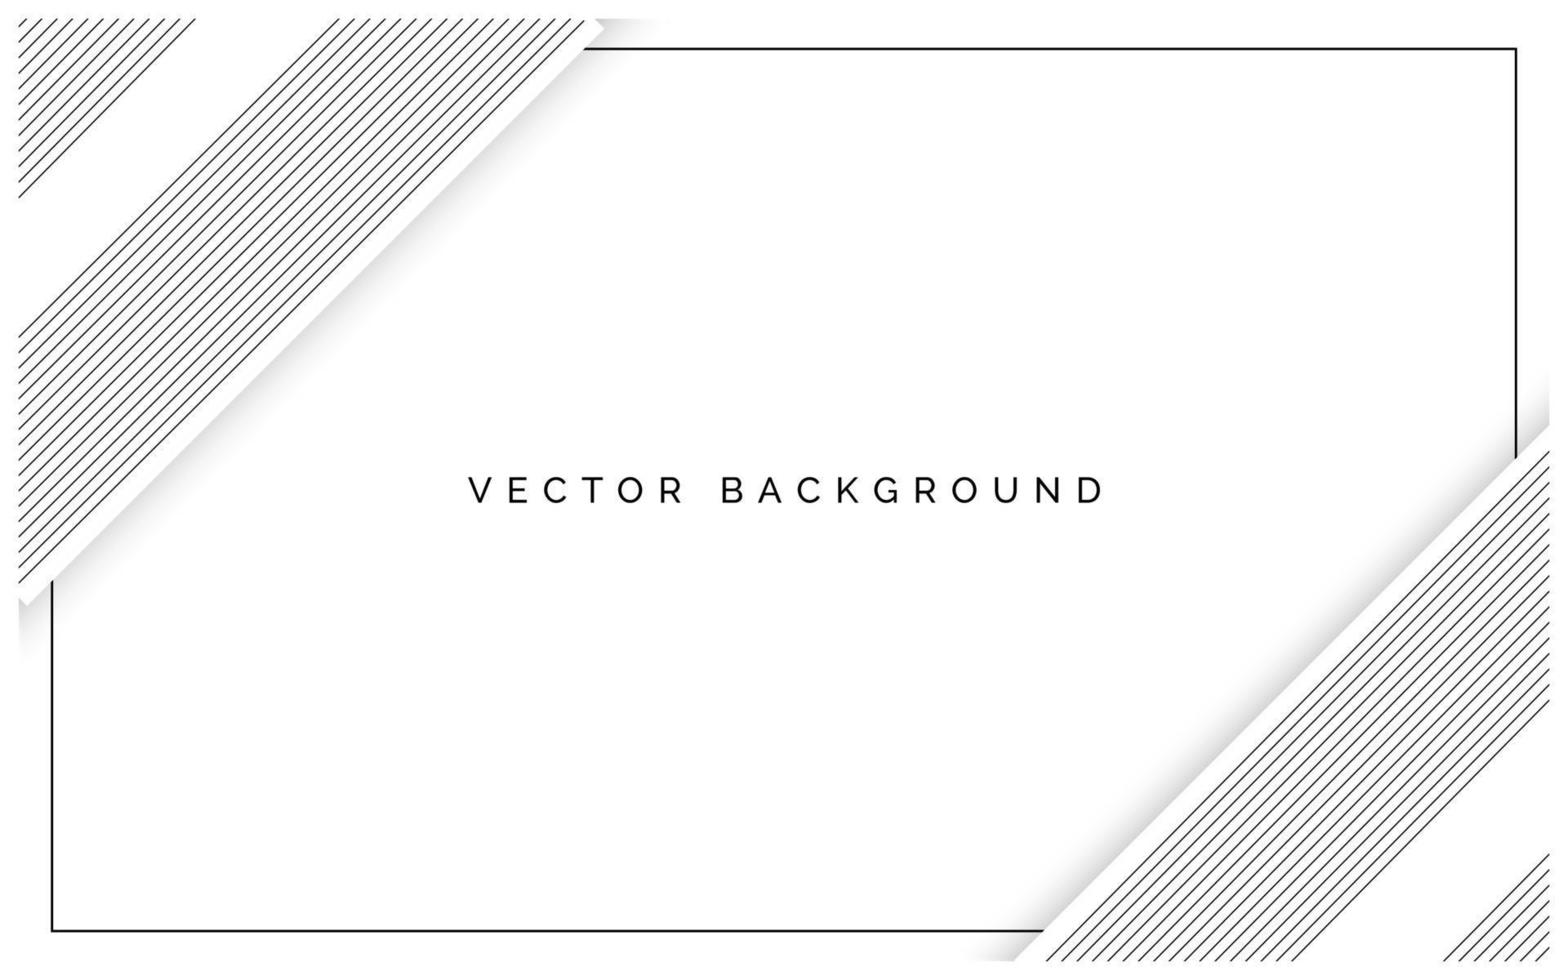 diseño de fondo de rectángulo blanco y negro de lujo vector